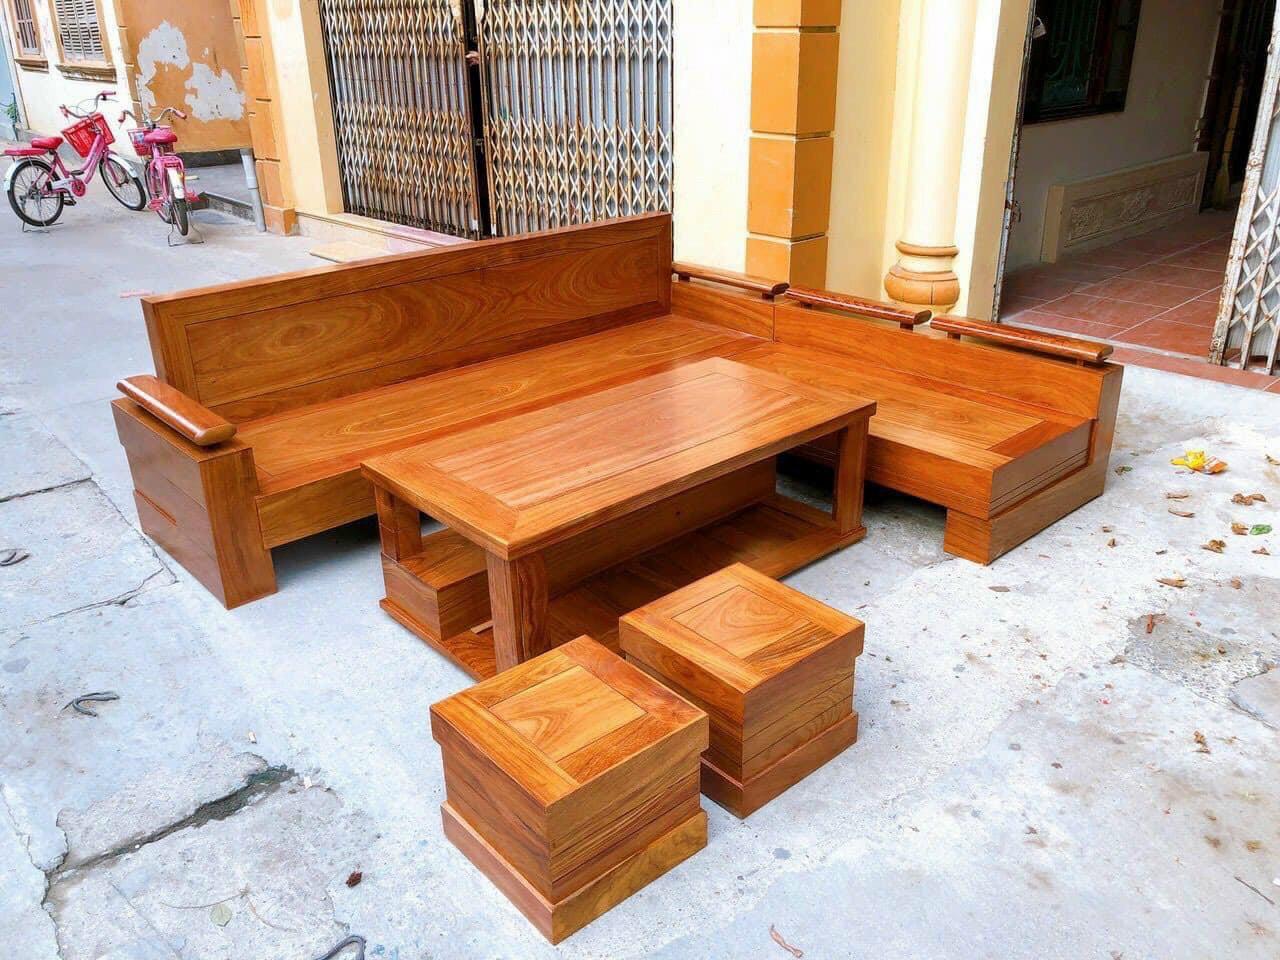 Bộ bàn ghế gỗ sồi Nga là sản phẩm đẳng cấp với chất liệu gỗ sồi Nga tốt nhất. Các mảnh gỗ sồi tự nhiên được lựa chọn kỹ lưỡng và đánh bóng tinh tế, tạo nên bộ bàn ghế sang trọng và lịch sự. Khách hàng sẽ cảm thấy hài lòng với sự độc đáo và chất lượng của sản phẩm này.